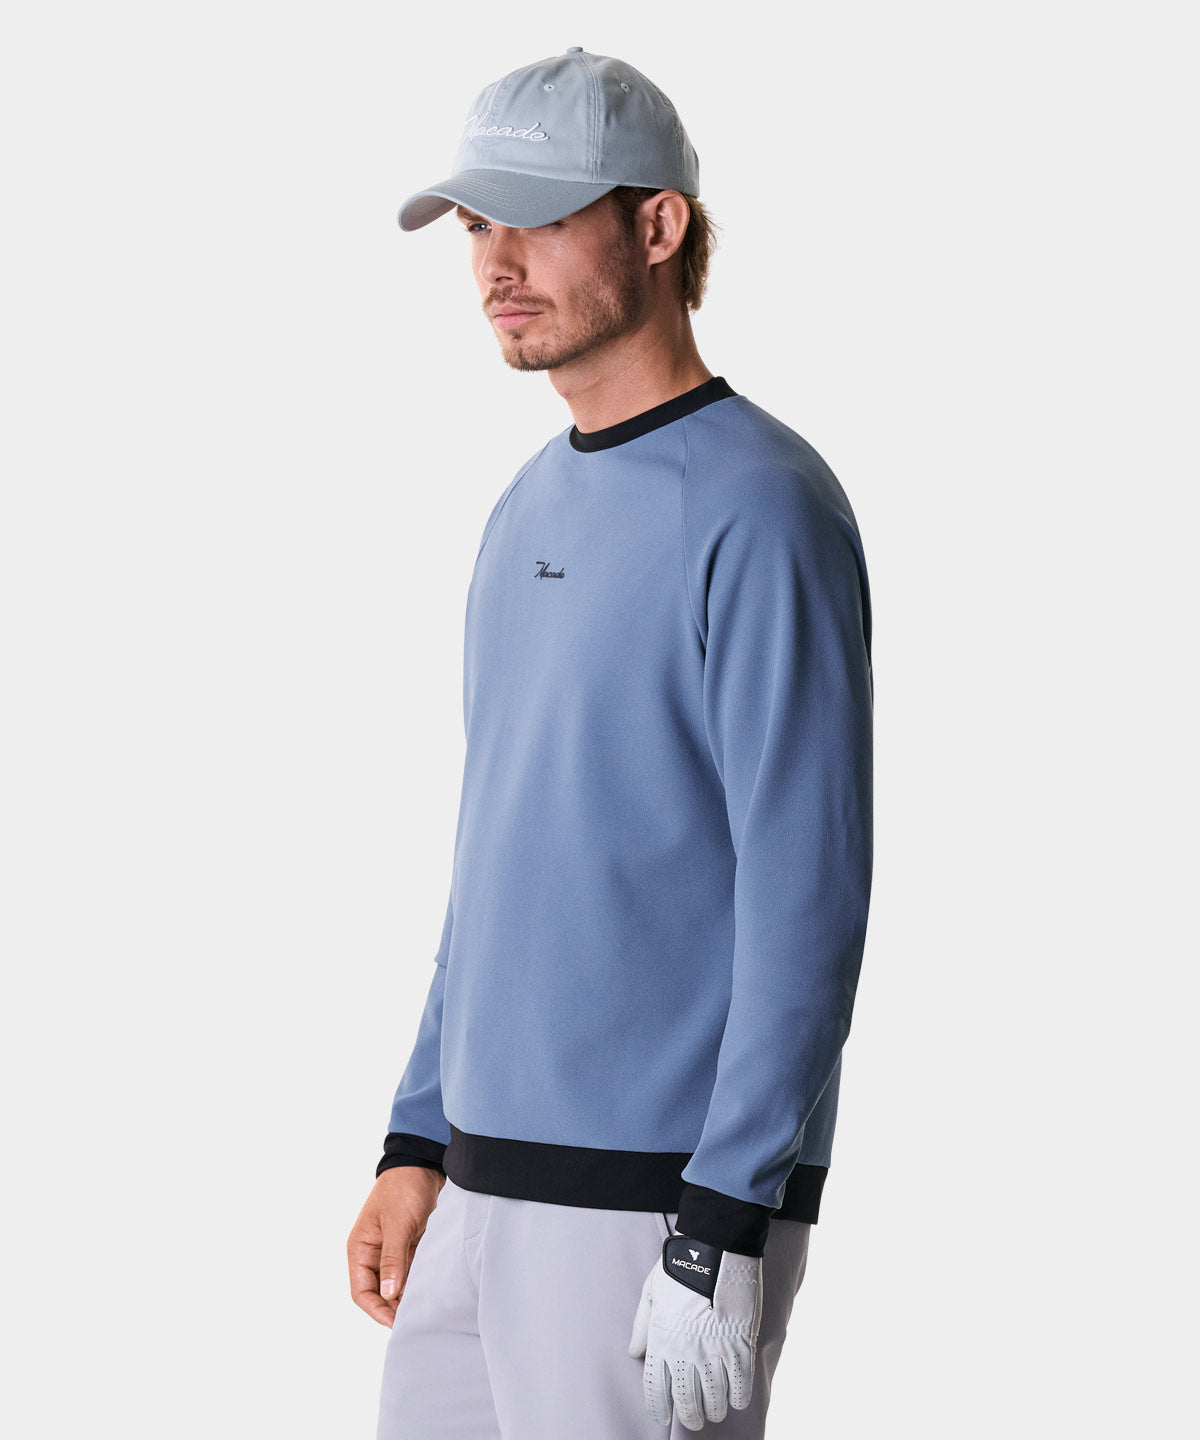 Ash Slate Tech Sweatshirt Macade Golf